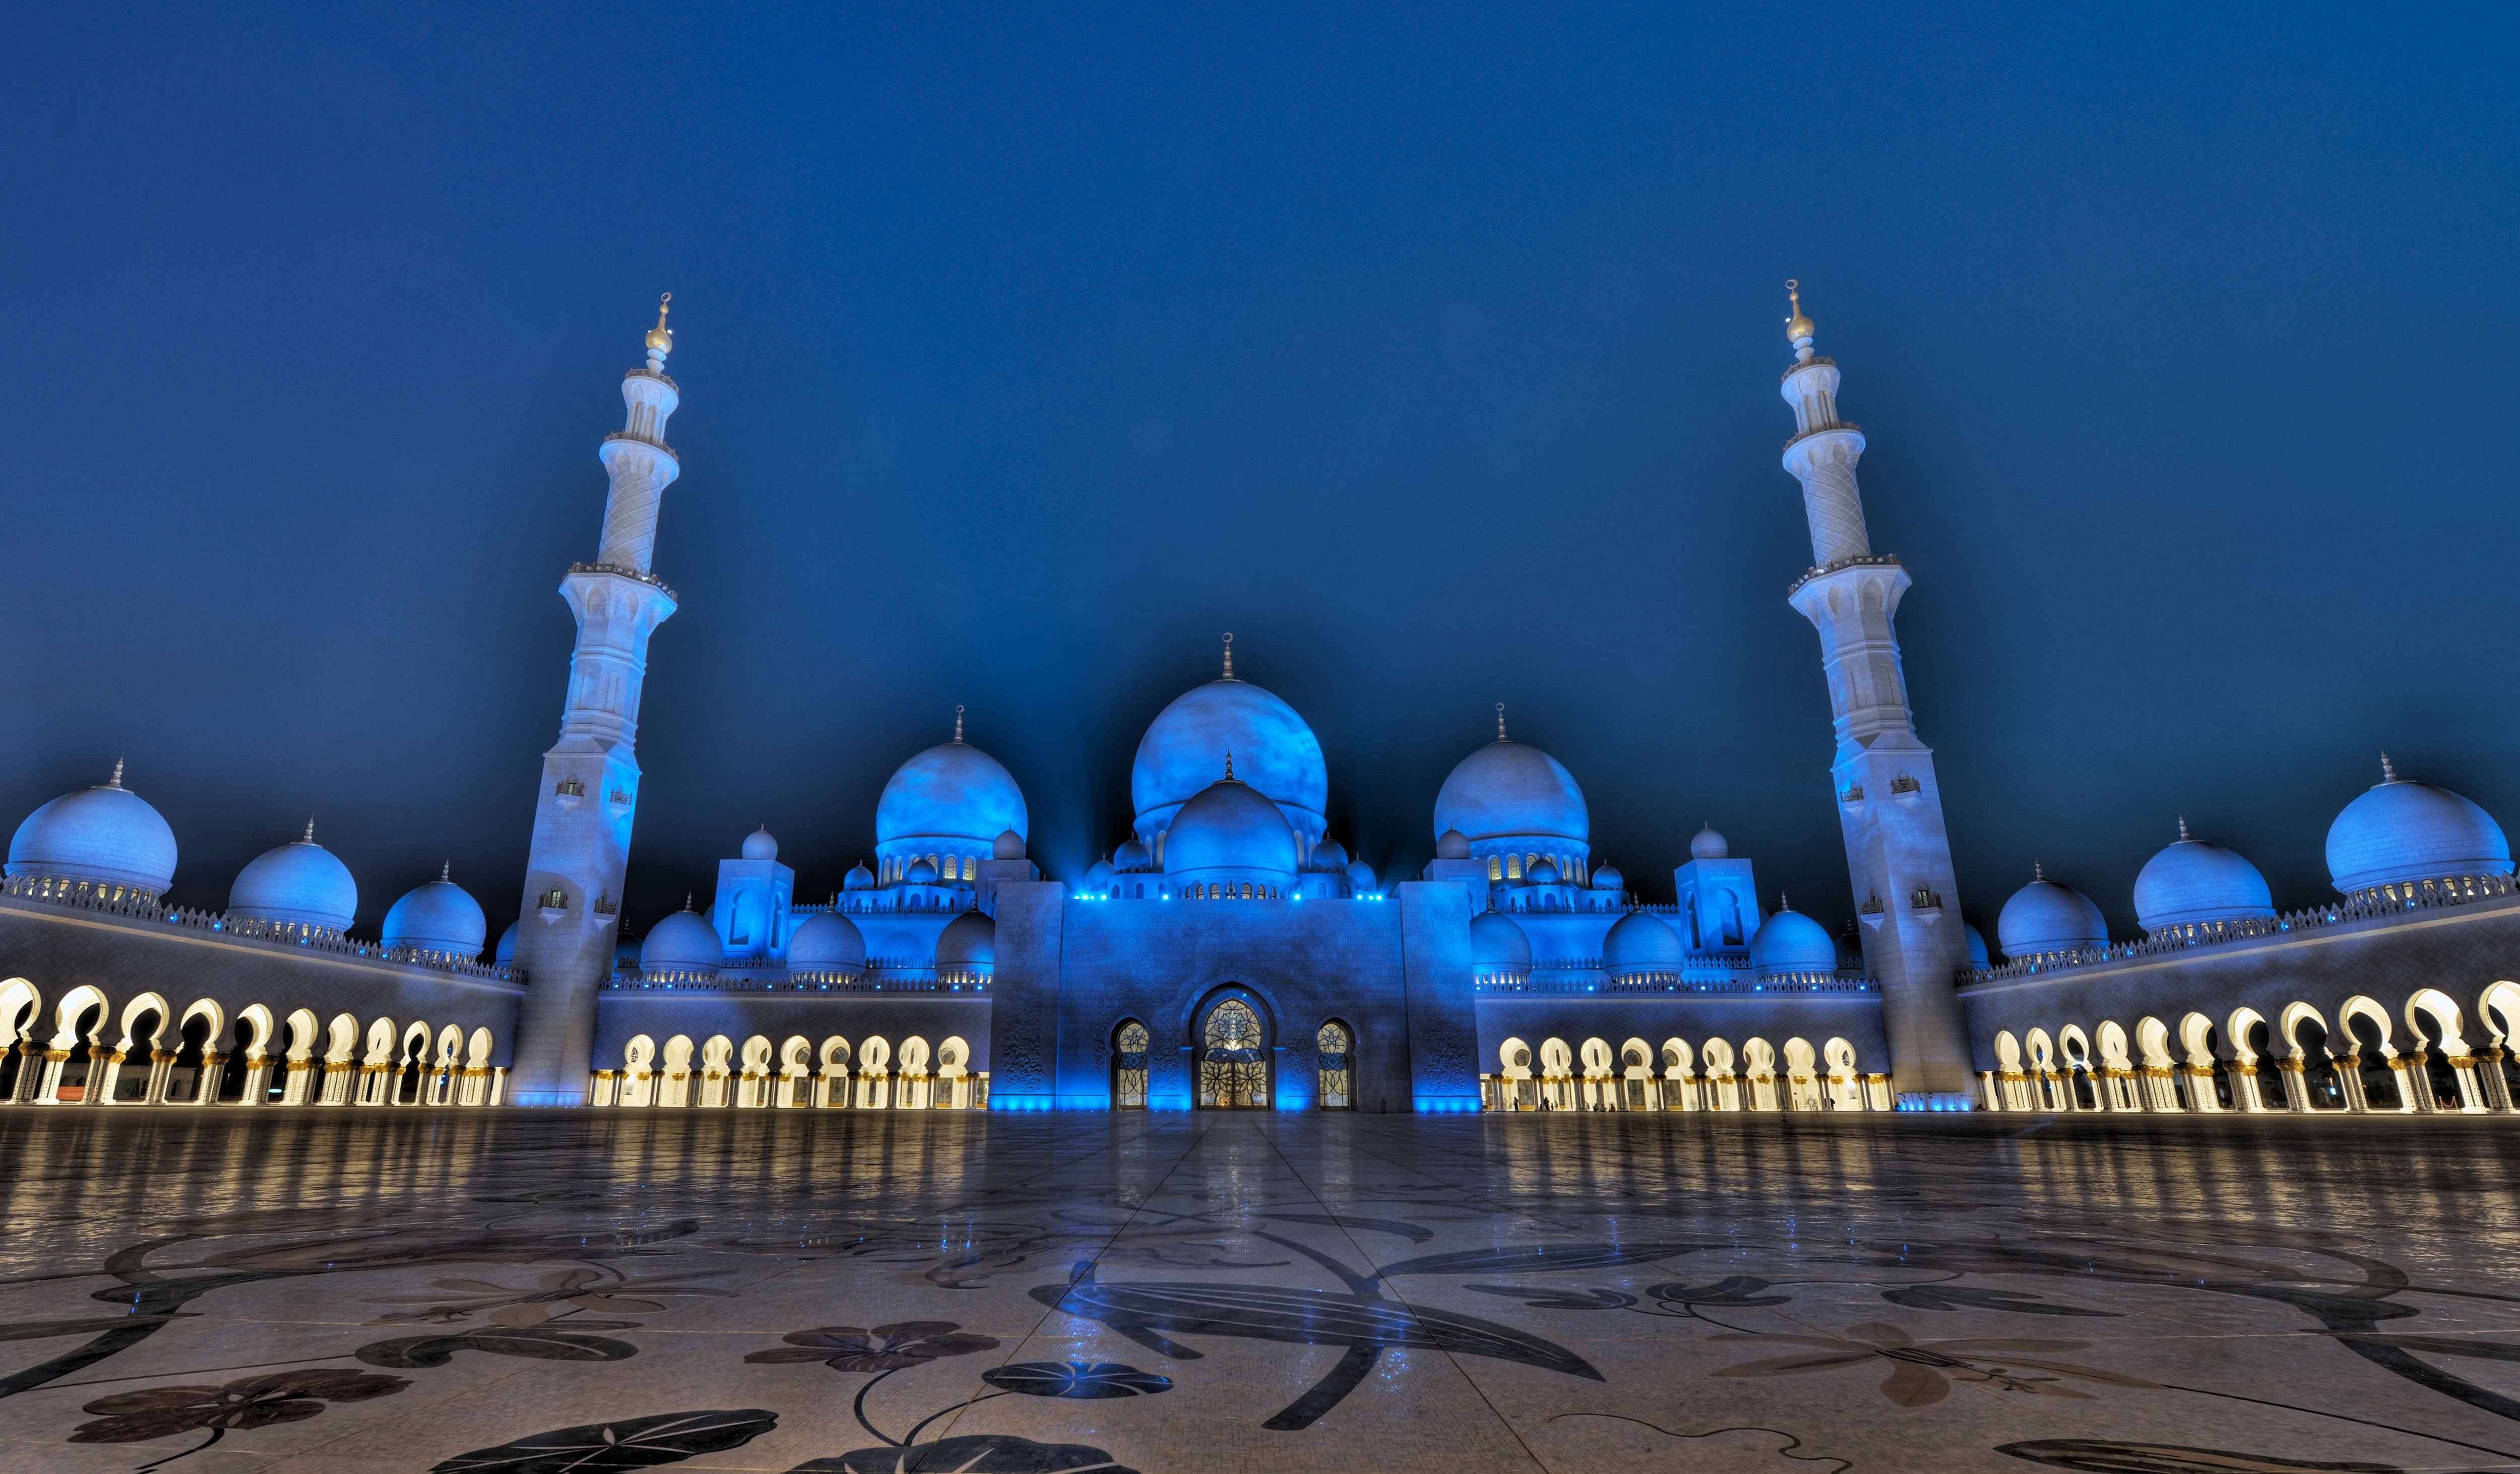 3. Oświetlenie meczetu jest powiązane z cyklem księżycowym.